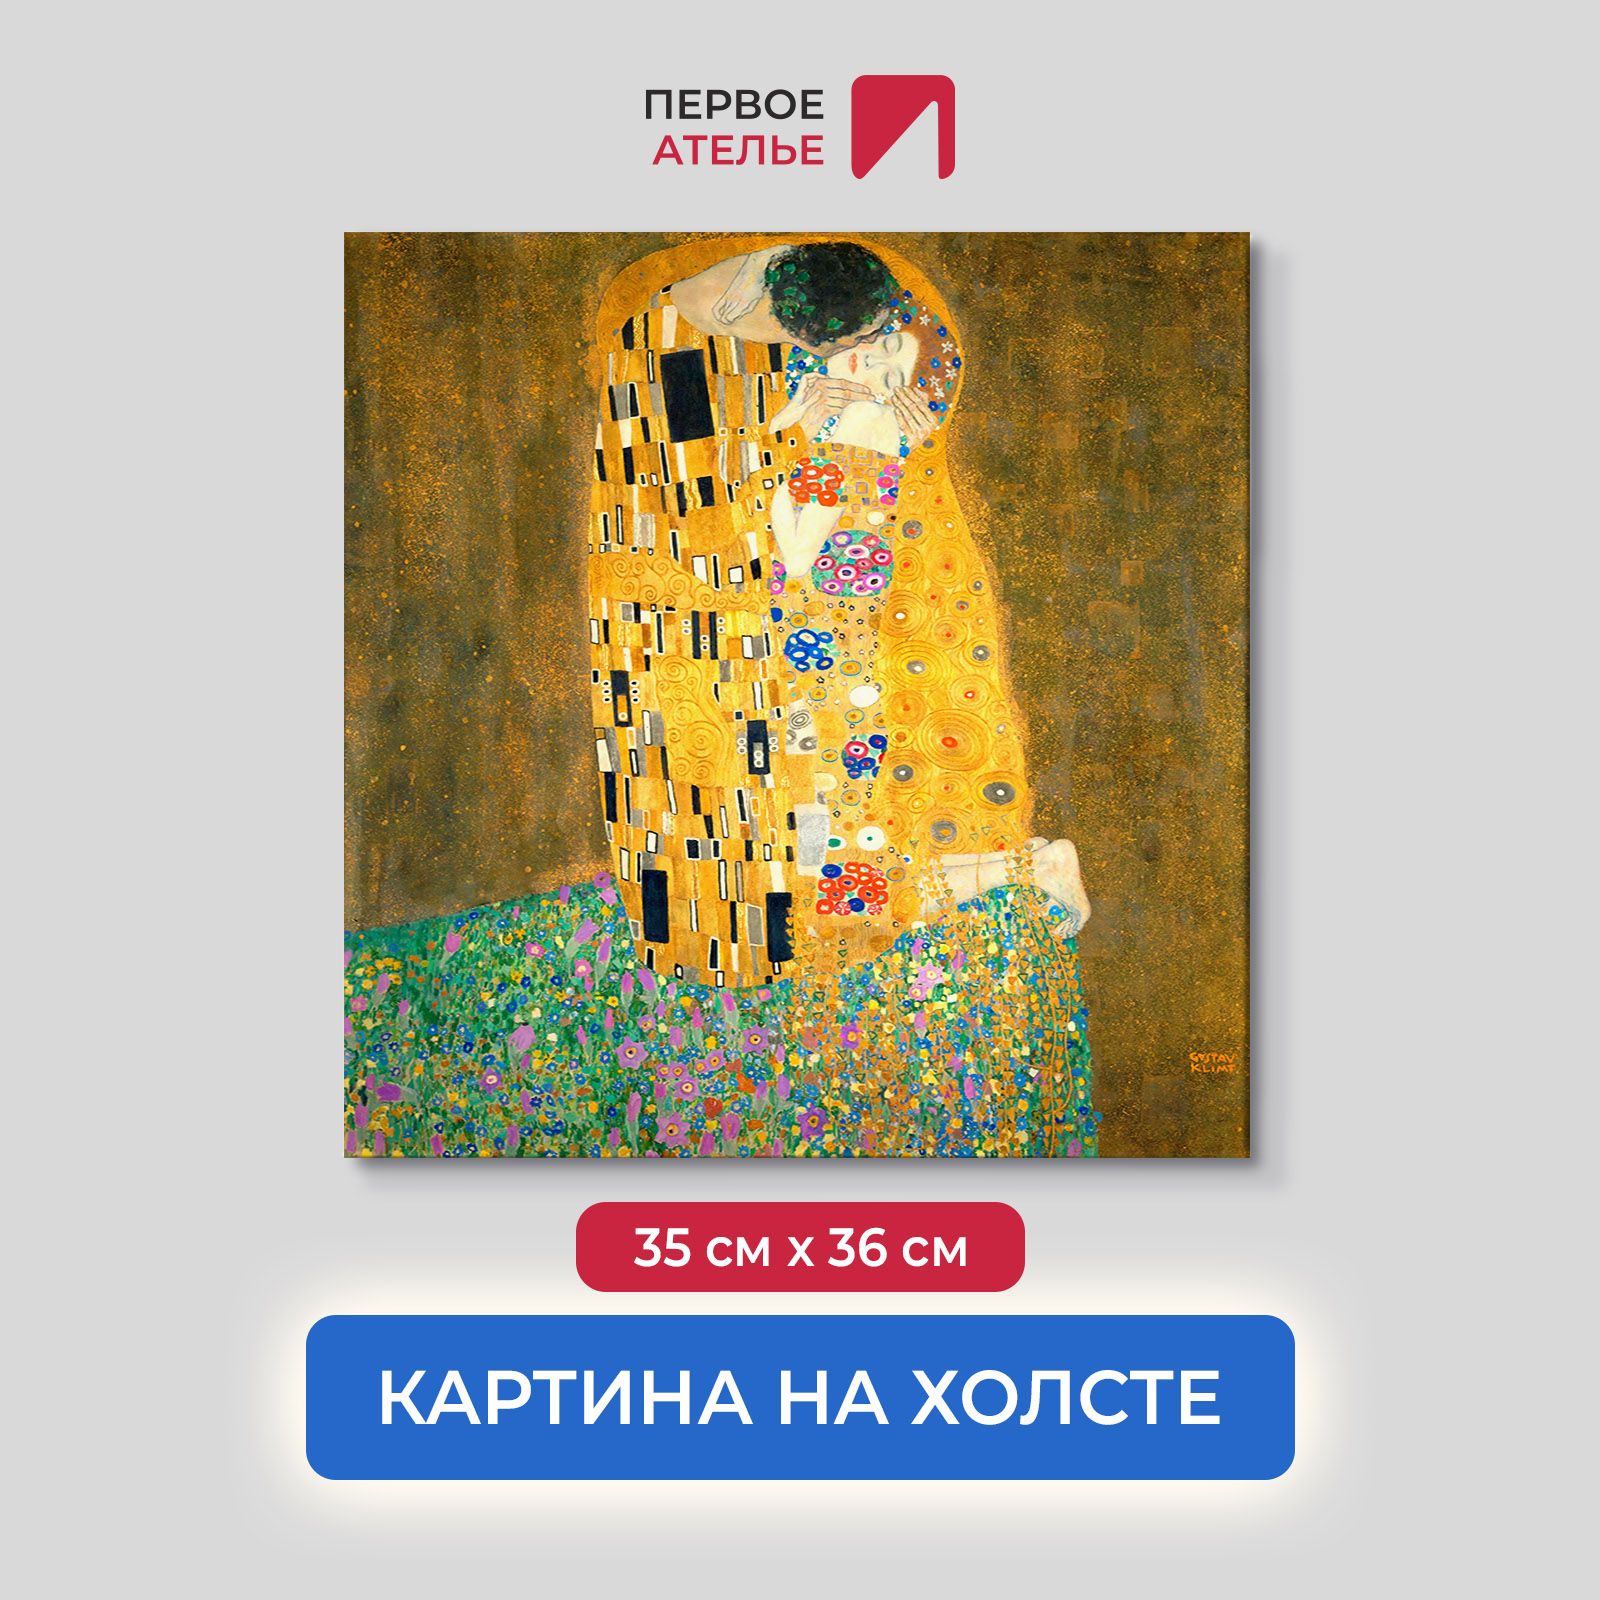 Картина на холсте репродукция Густава Климта 